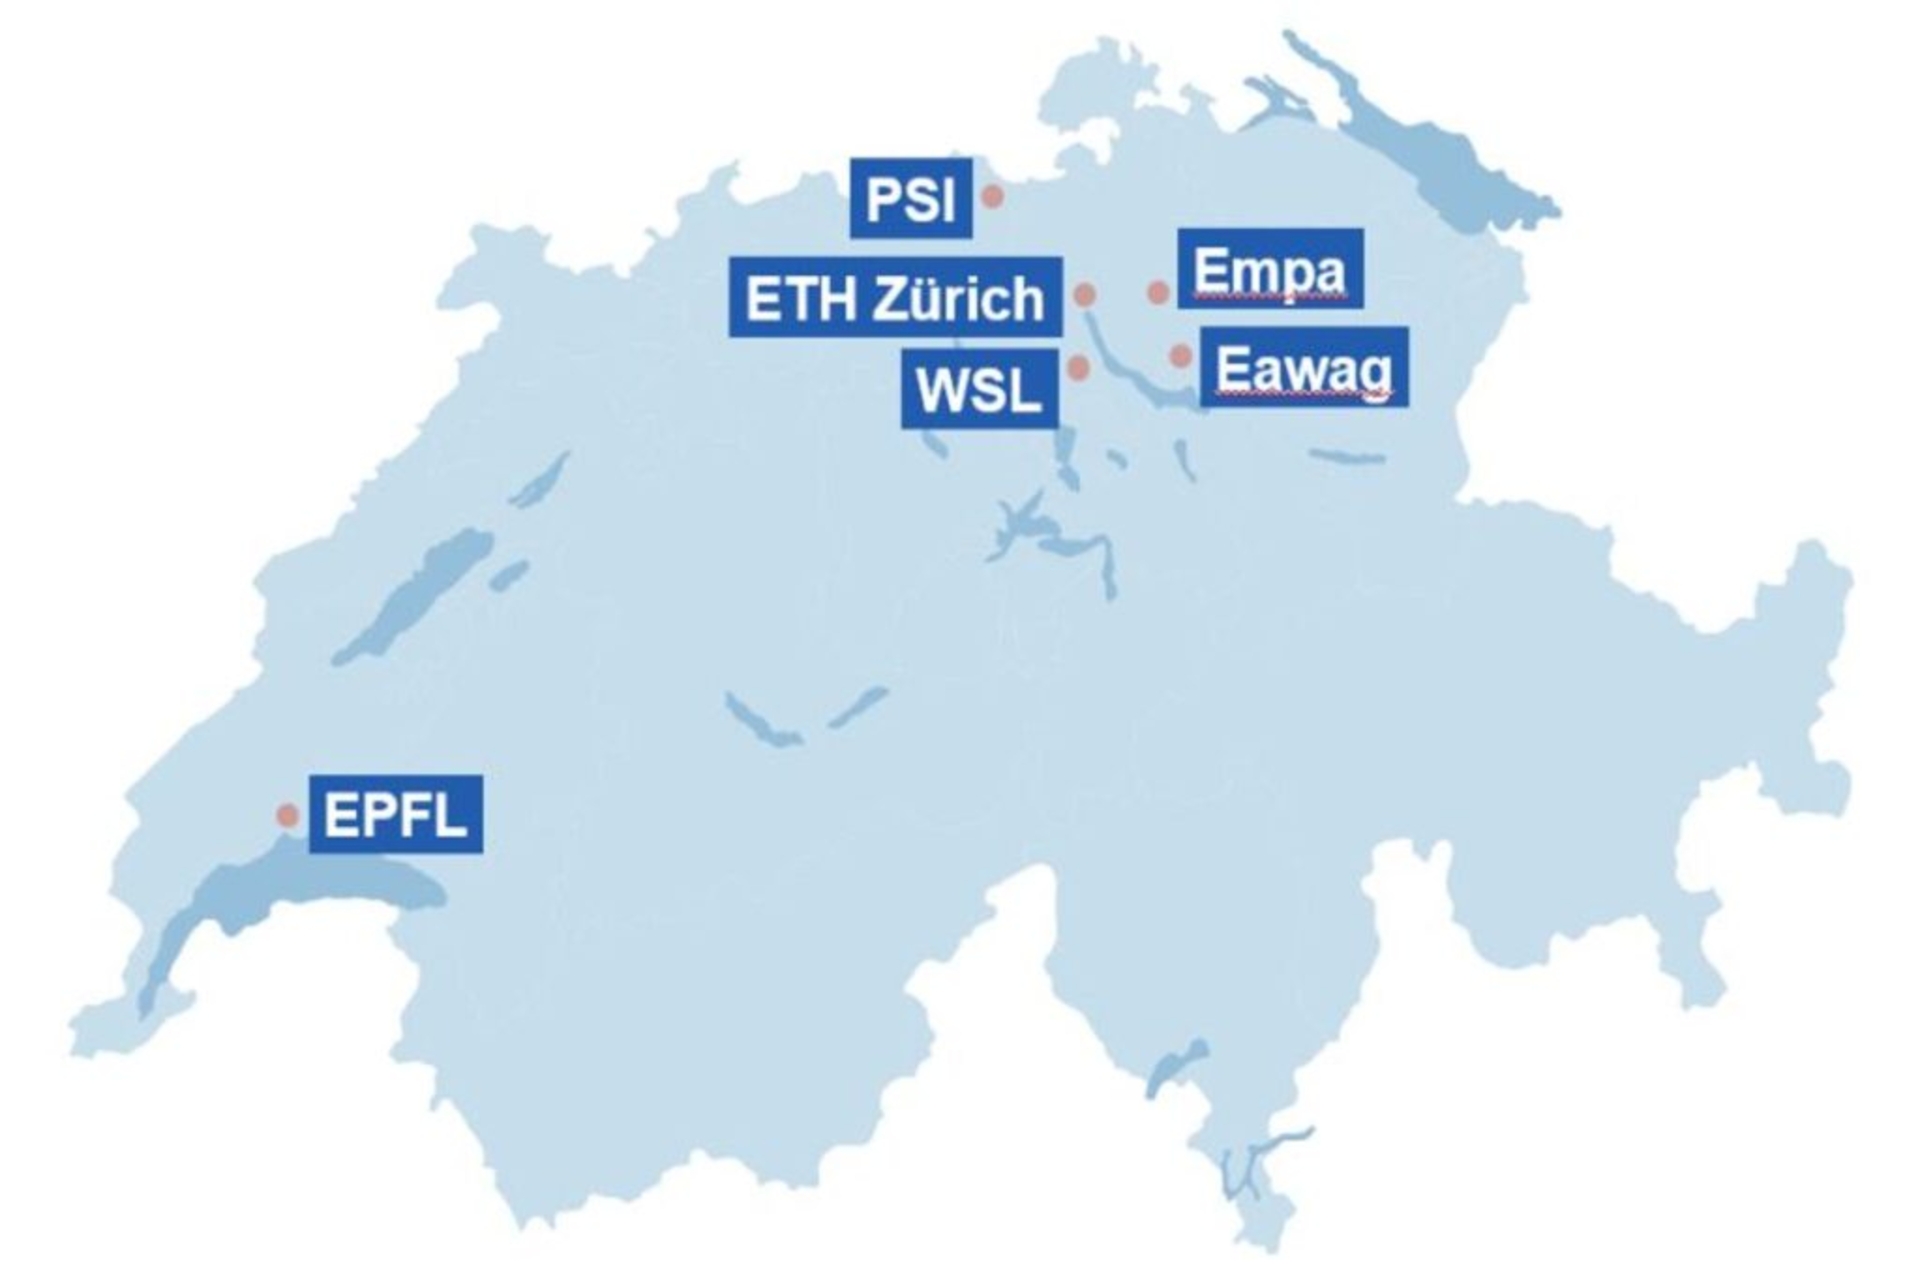 Szwajcarskie ośrodki badawcze: EMPA, EAWAG, WSL i PSI